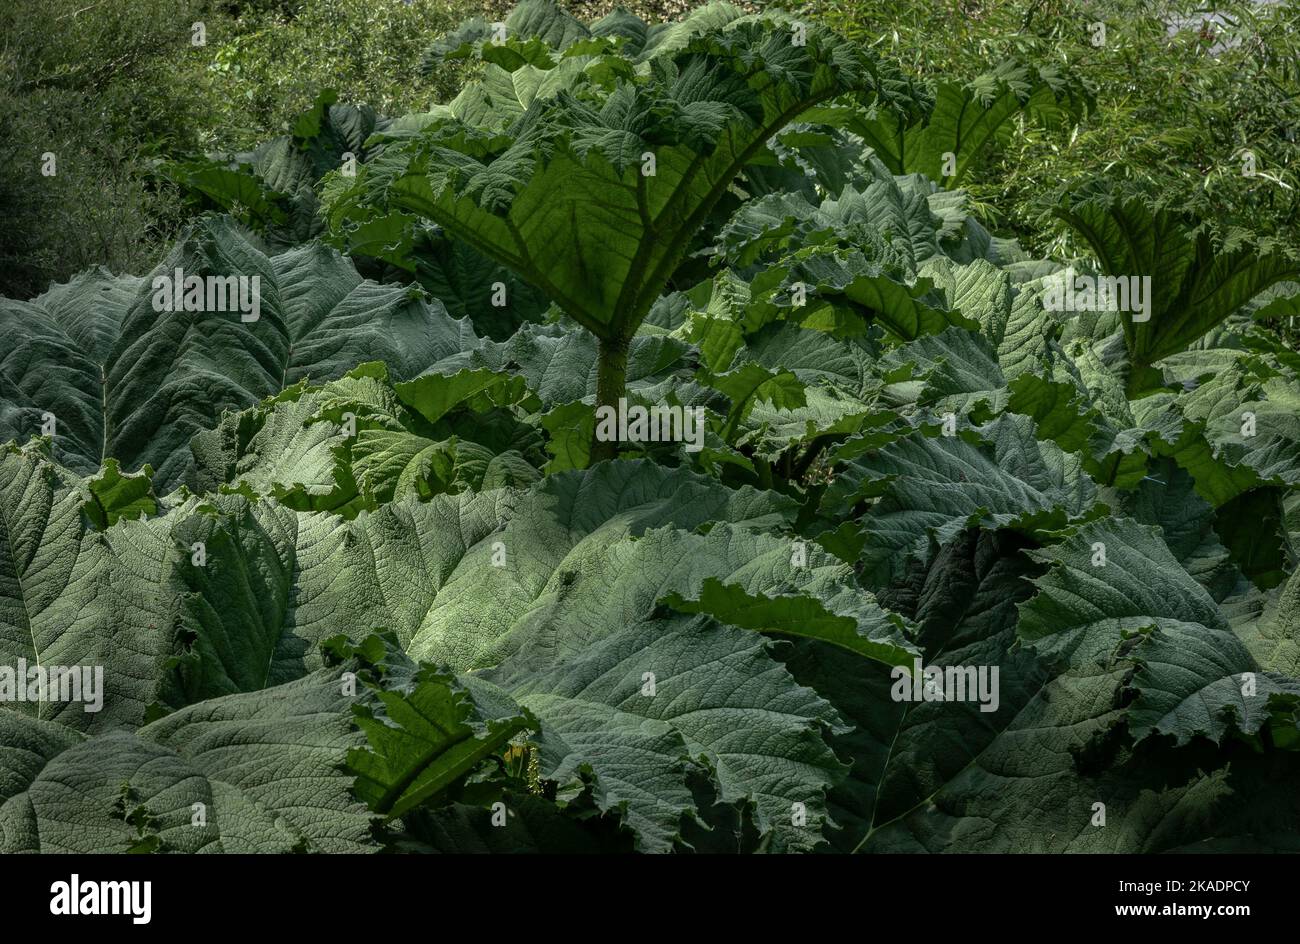 Grüner Hintergrund mit riesigen Blättern der Dschungelpflanze Gunnera. Stockfoto